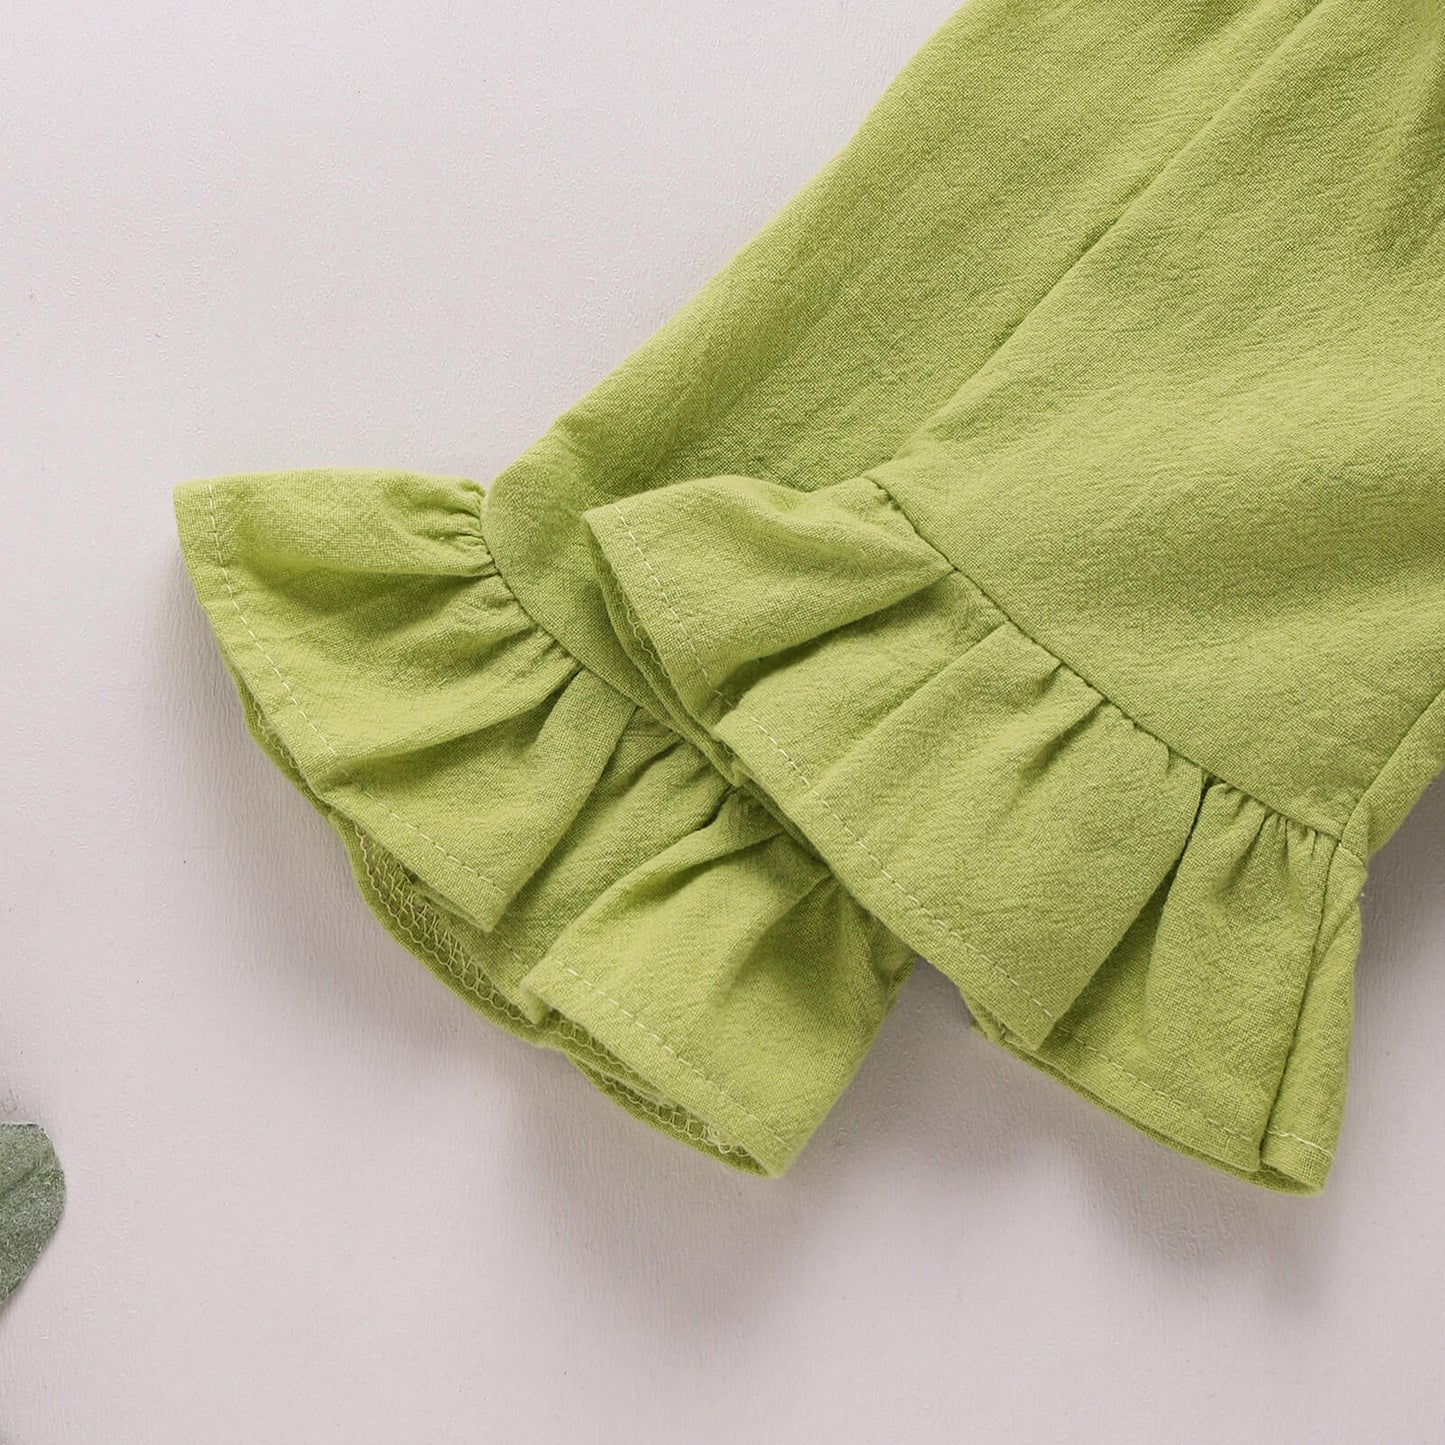 Lime Bow Flounce Sleeve Bodysuit